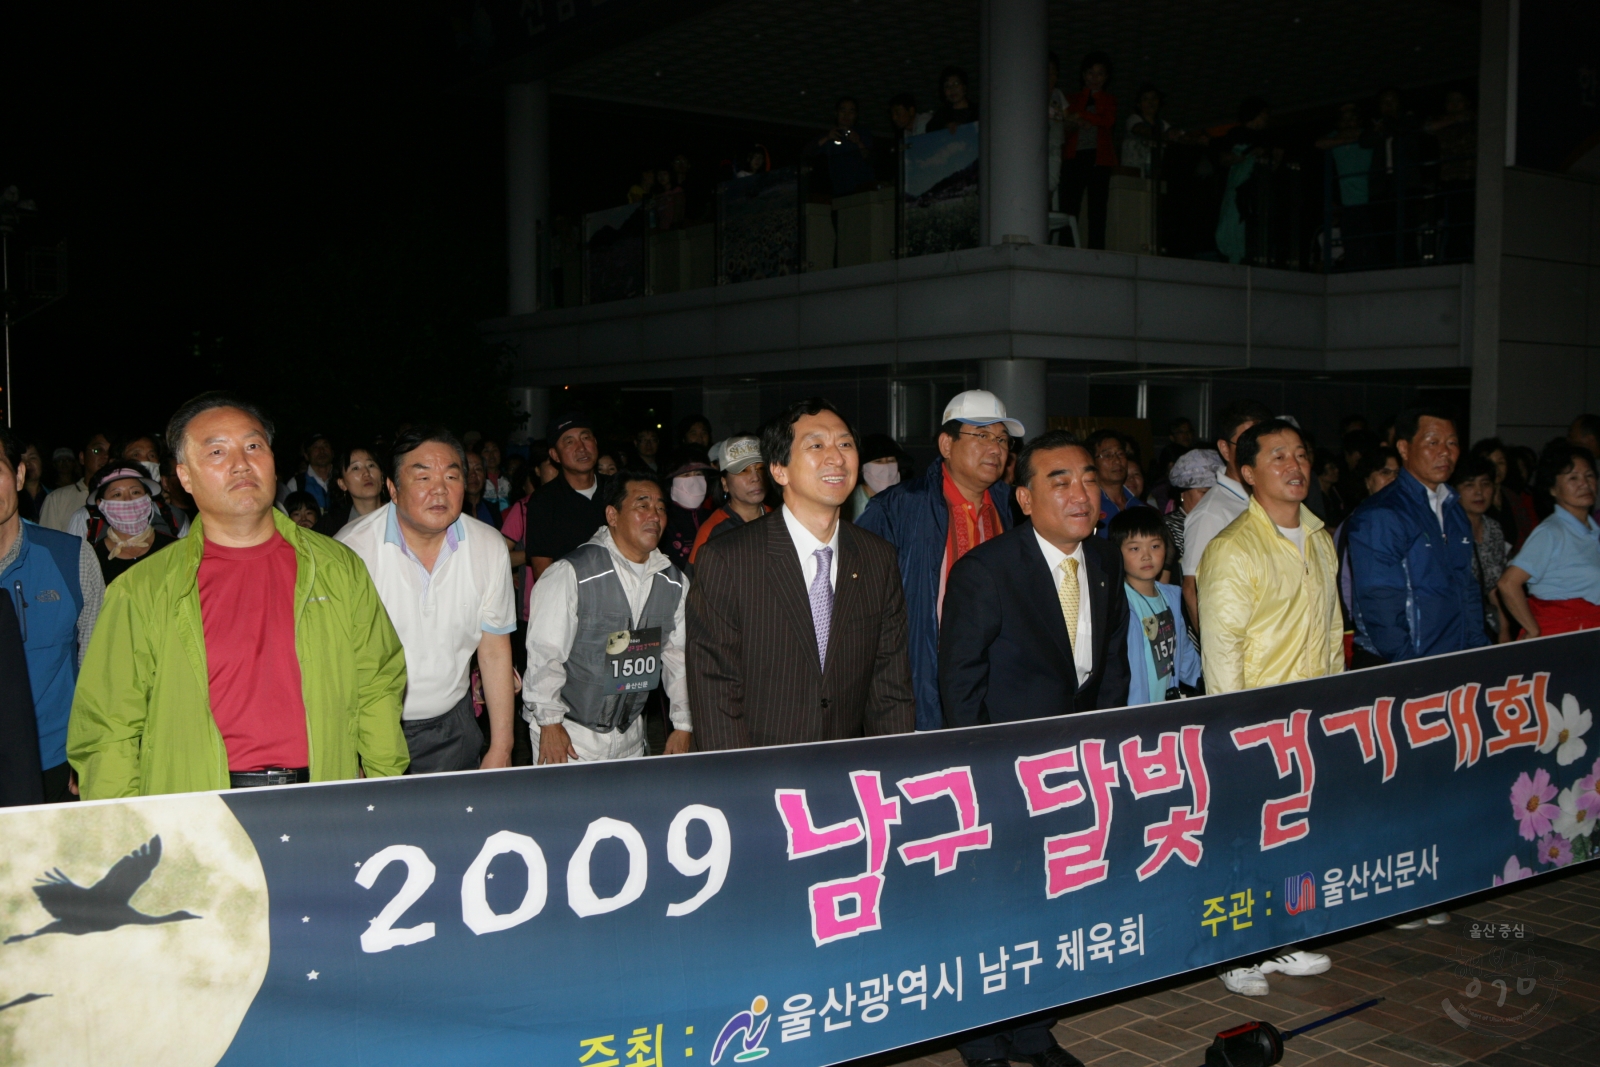 2009 남구 달빛 걷기대회 의 사진